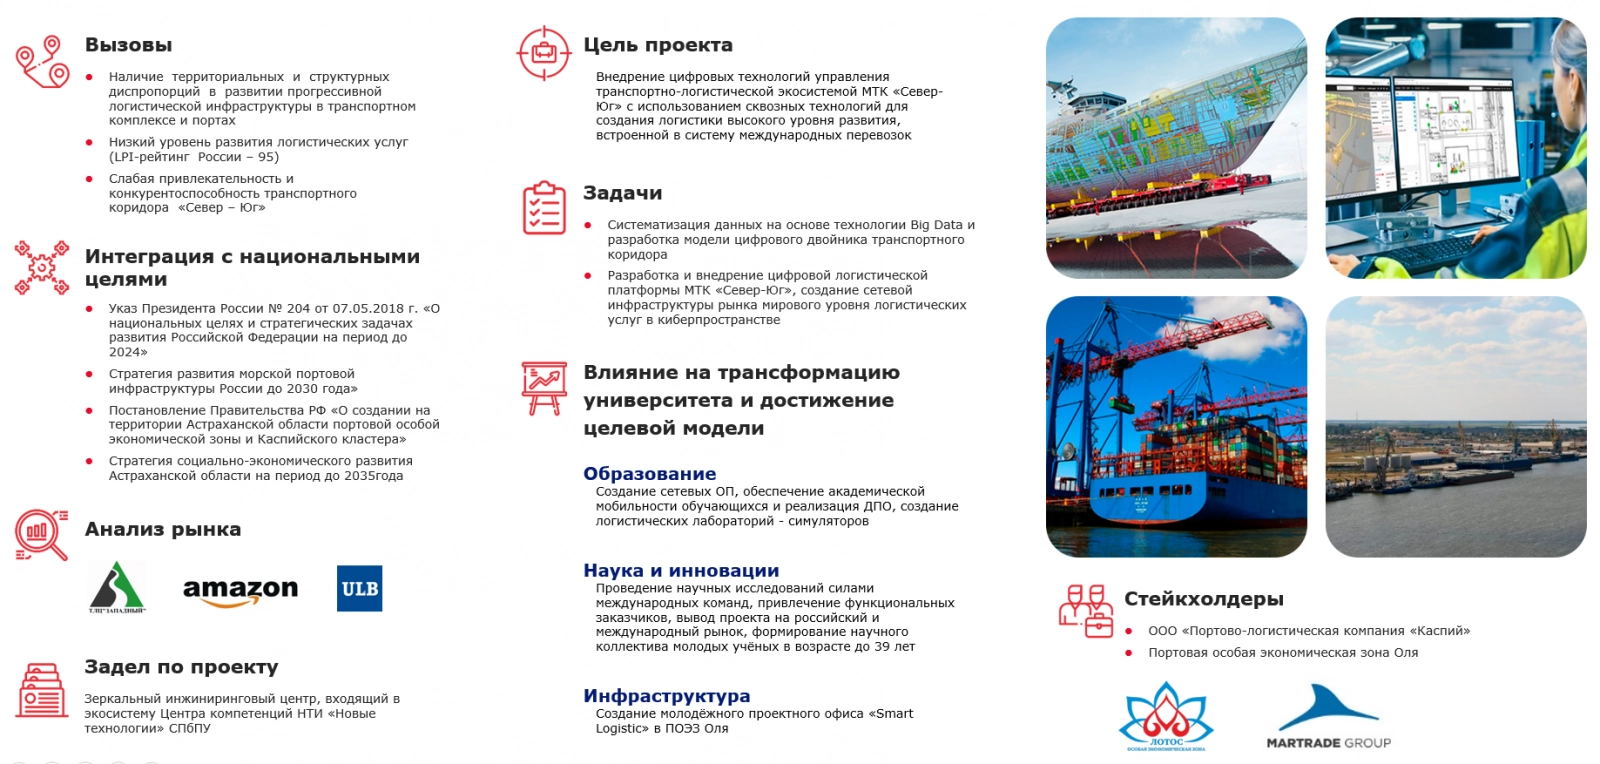 Стратегический проект №2. Цифровая платформа транспортного коридора «Север-Юг»